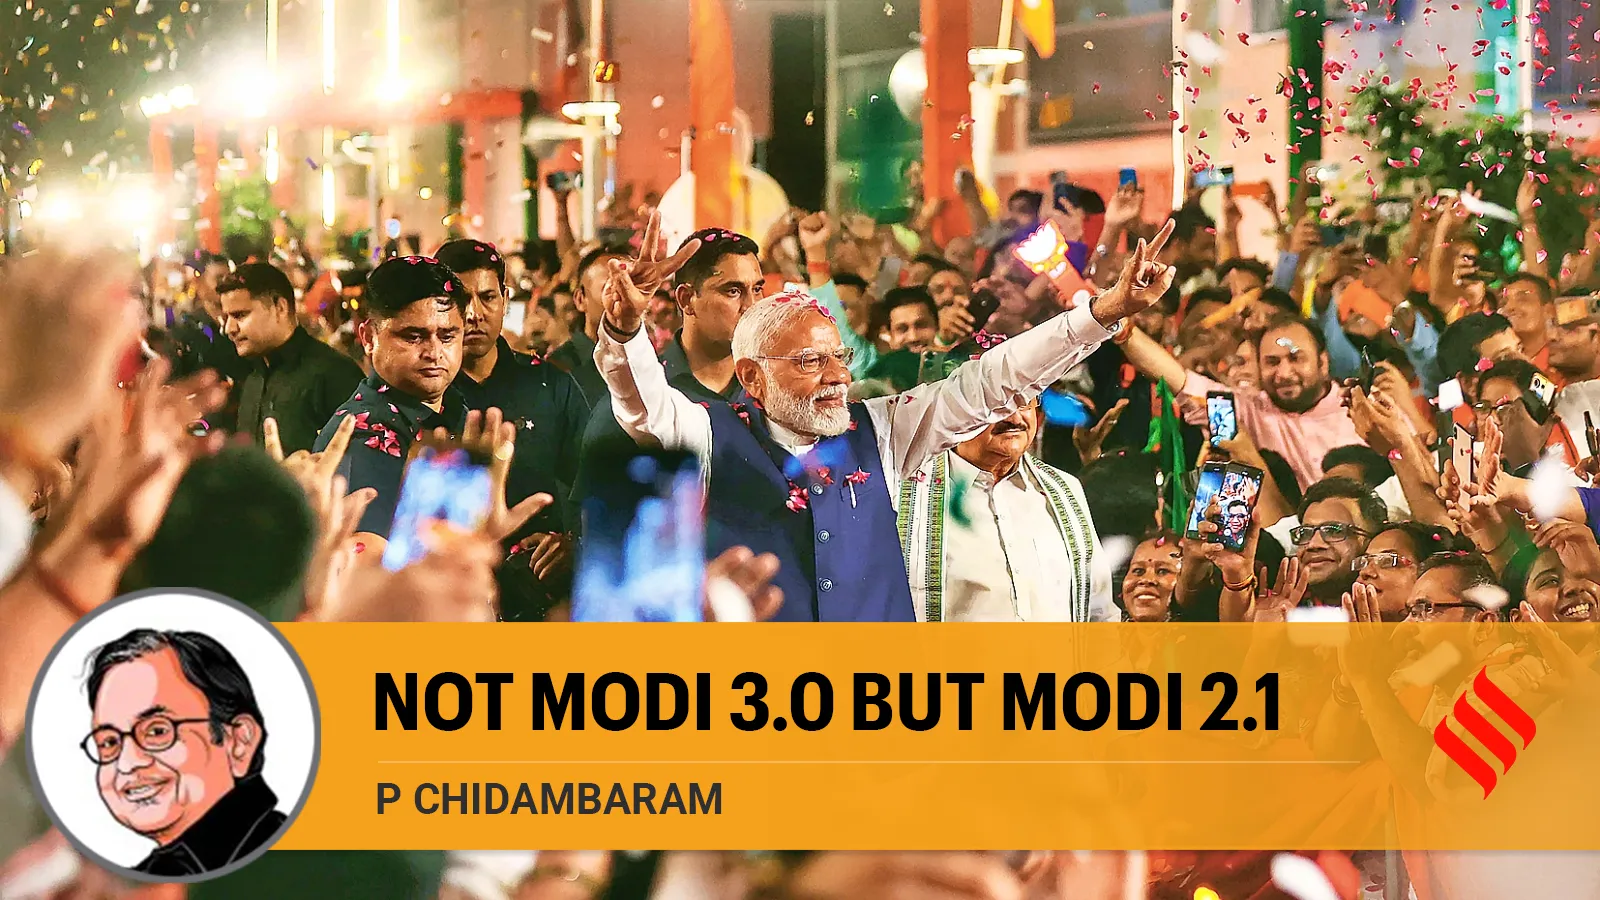 P Chidambaram writes: Not Modi 3.0 but Modi 2.1